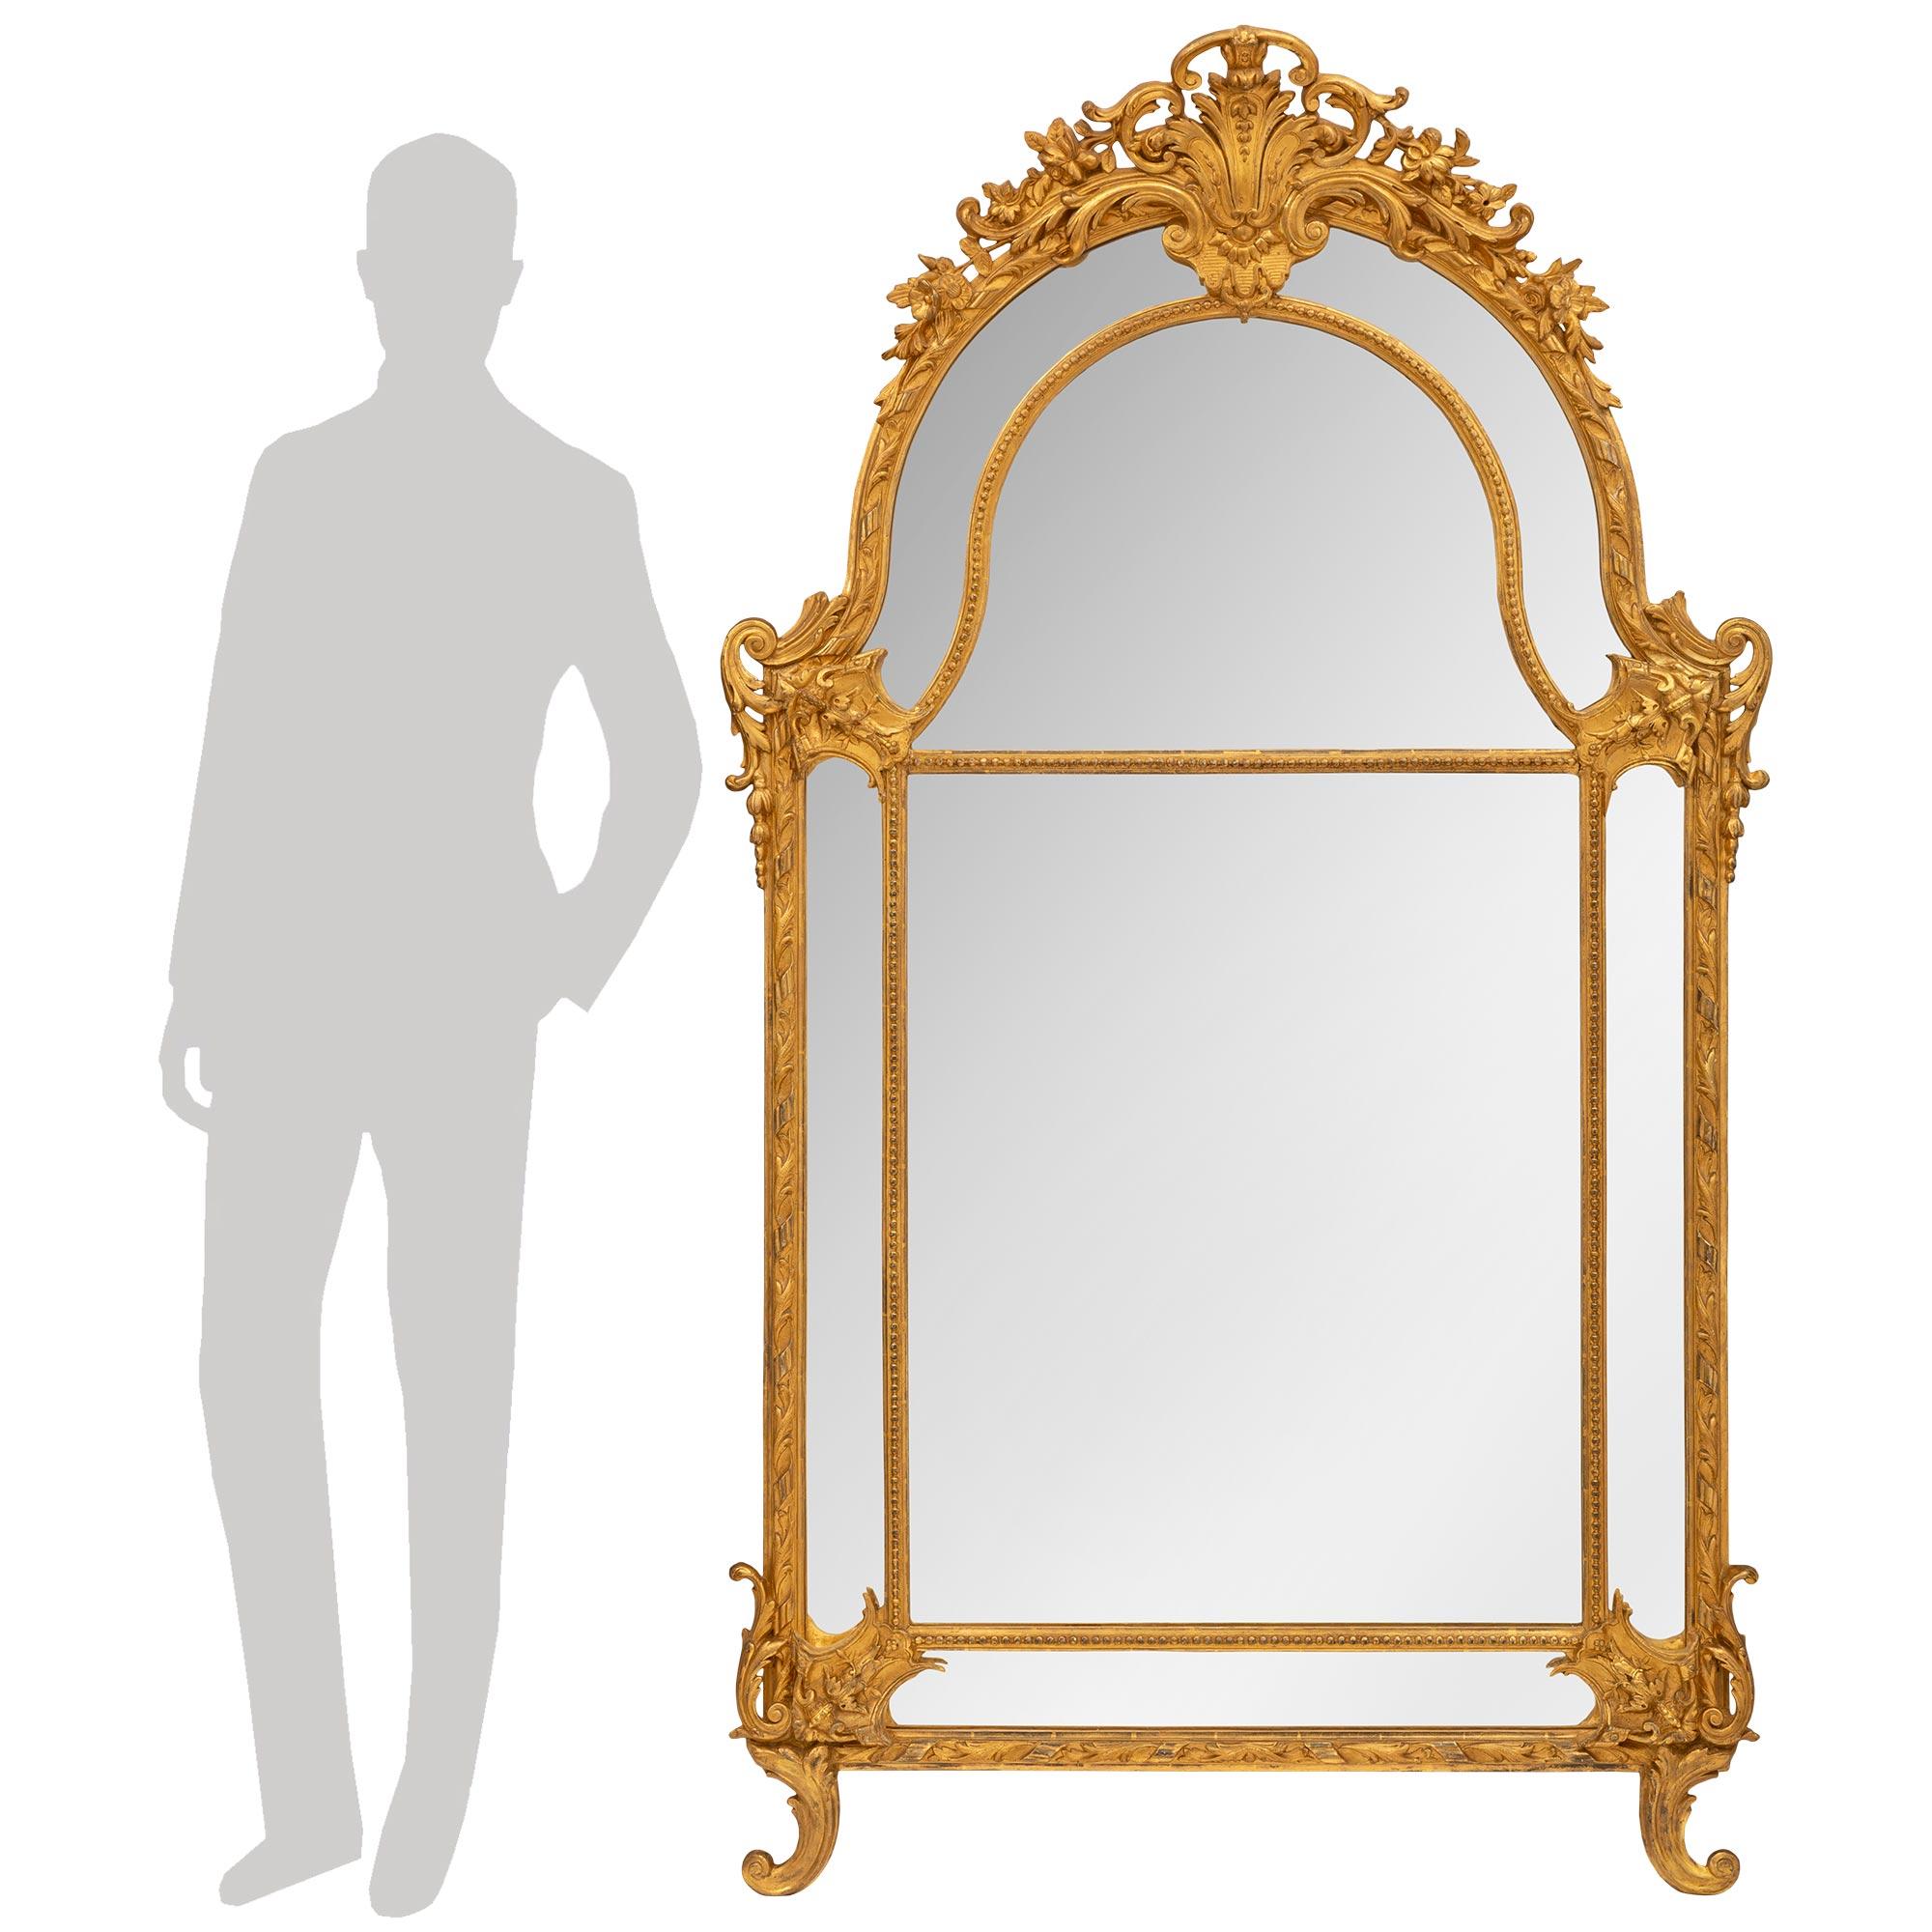 Un magnifique miroir français du 19ème siècle en bois doré de style Louis XV. Le miroir à double encadrement a conservé toutes ses plaques de miroir d'origine. Les plaques de miroir centrales sont encadrées par de fines bandes de perles